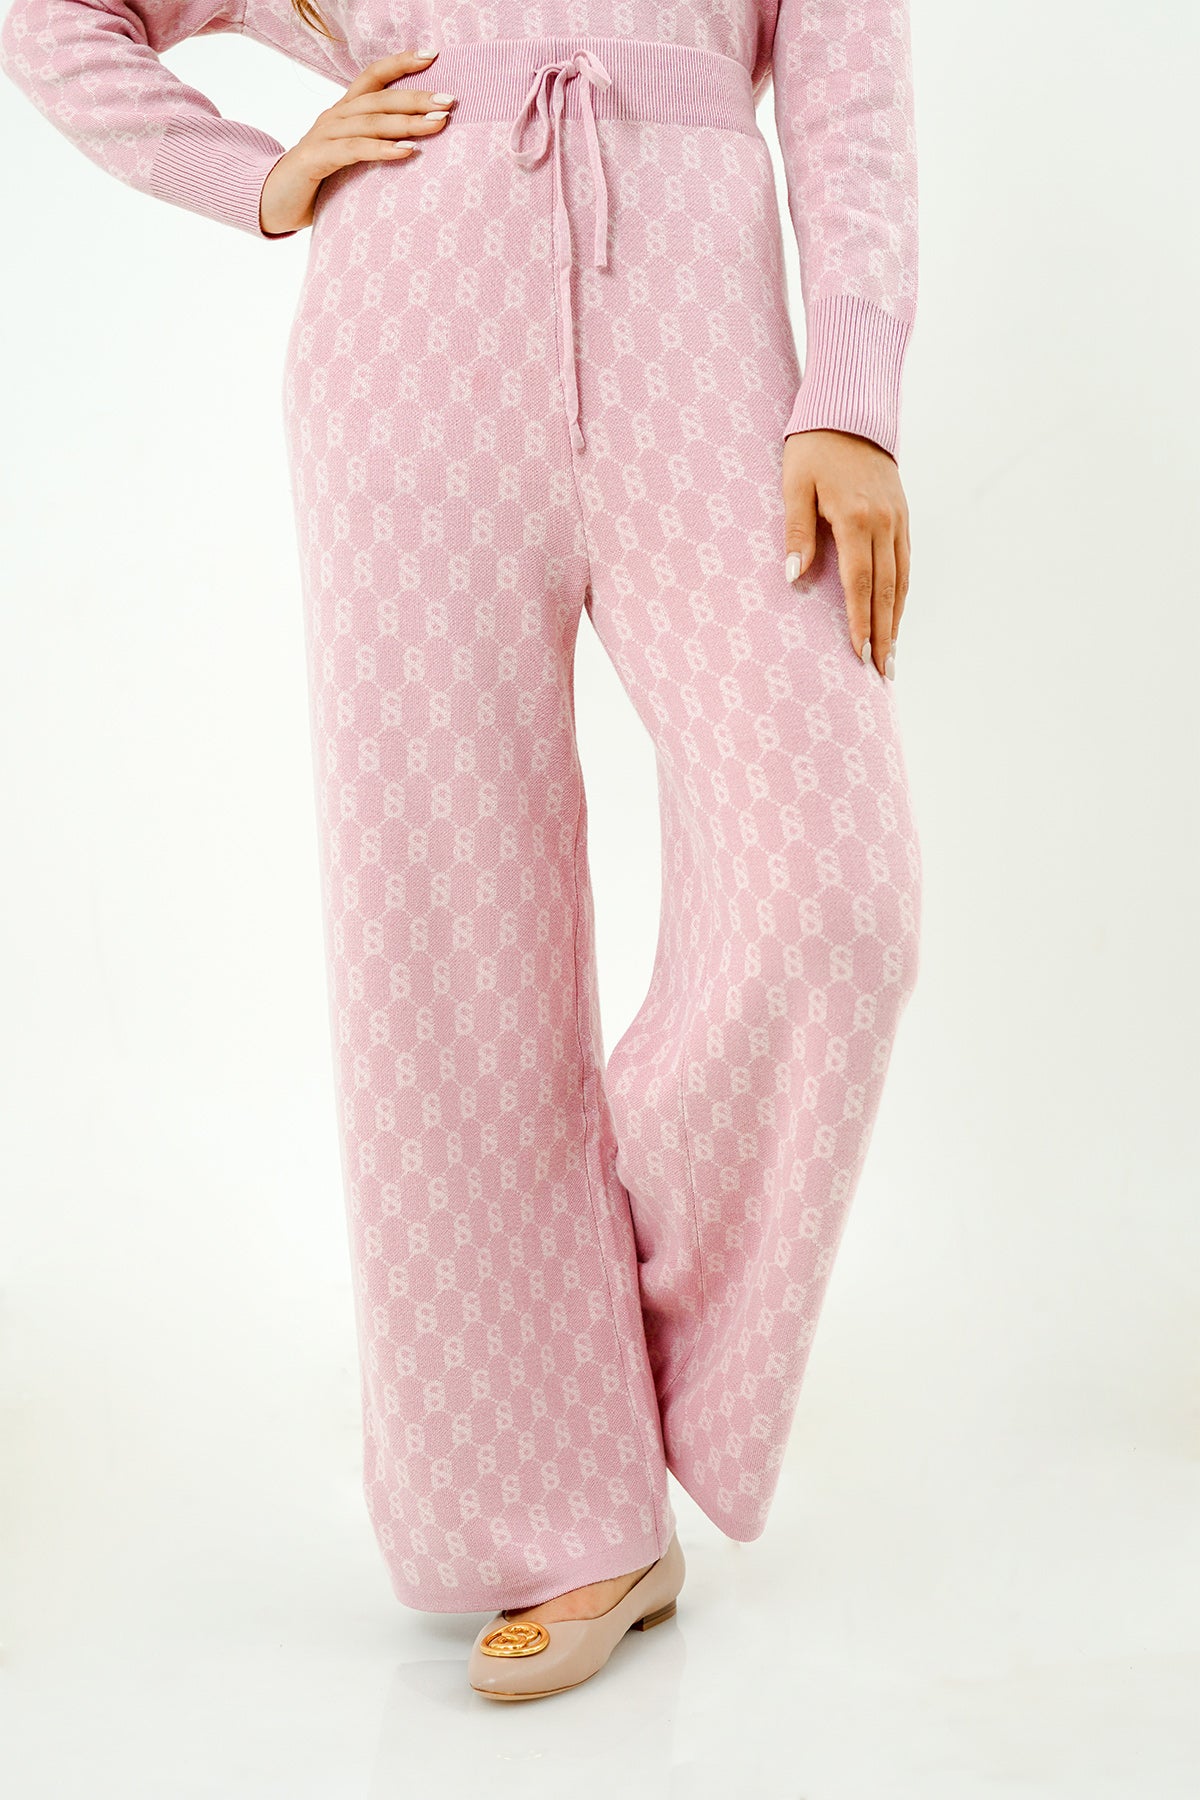 Signature Comfy Pants - Pink